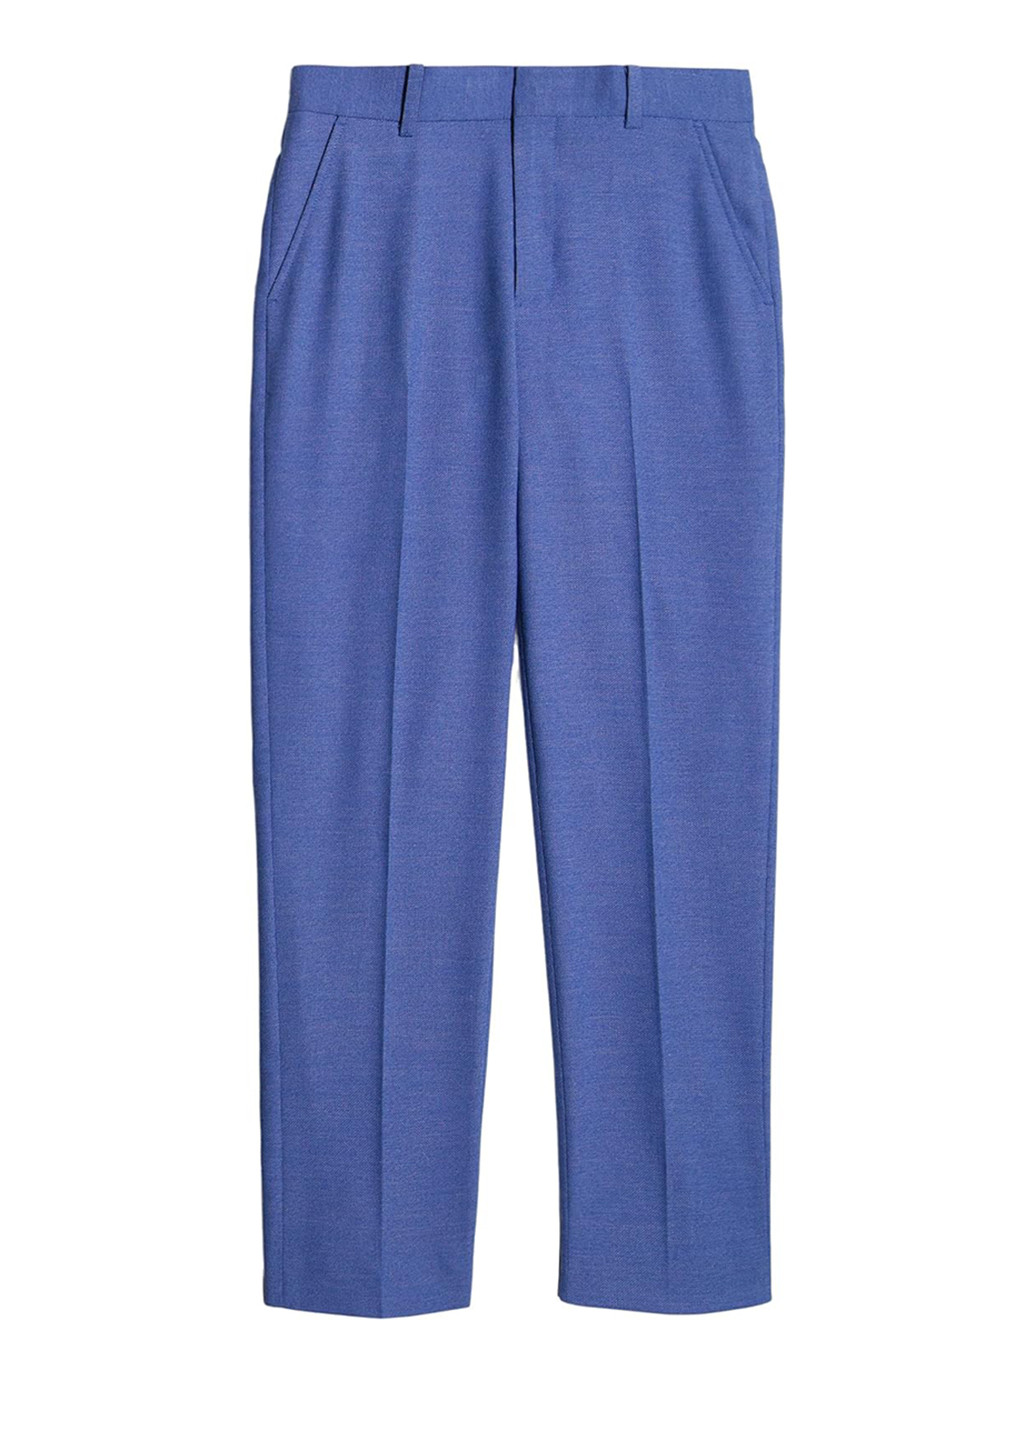 Синие классические демисезонные брюки прямые, классические Tommy Hilfiger